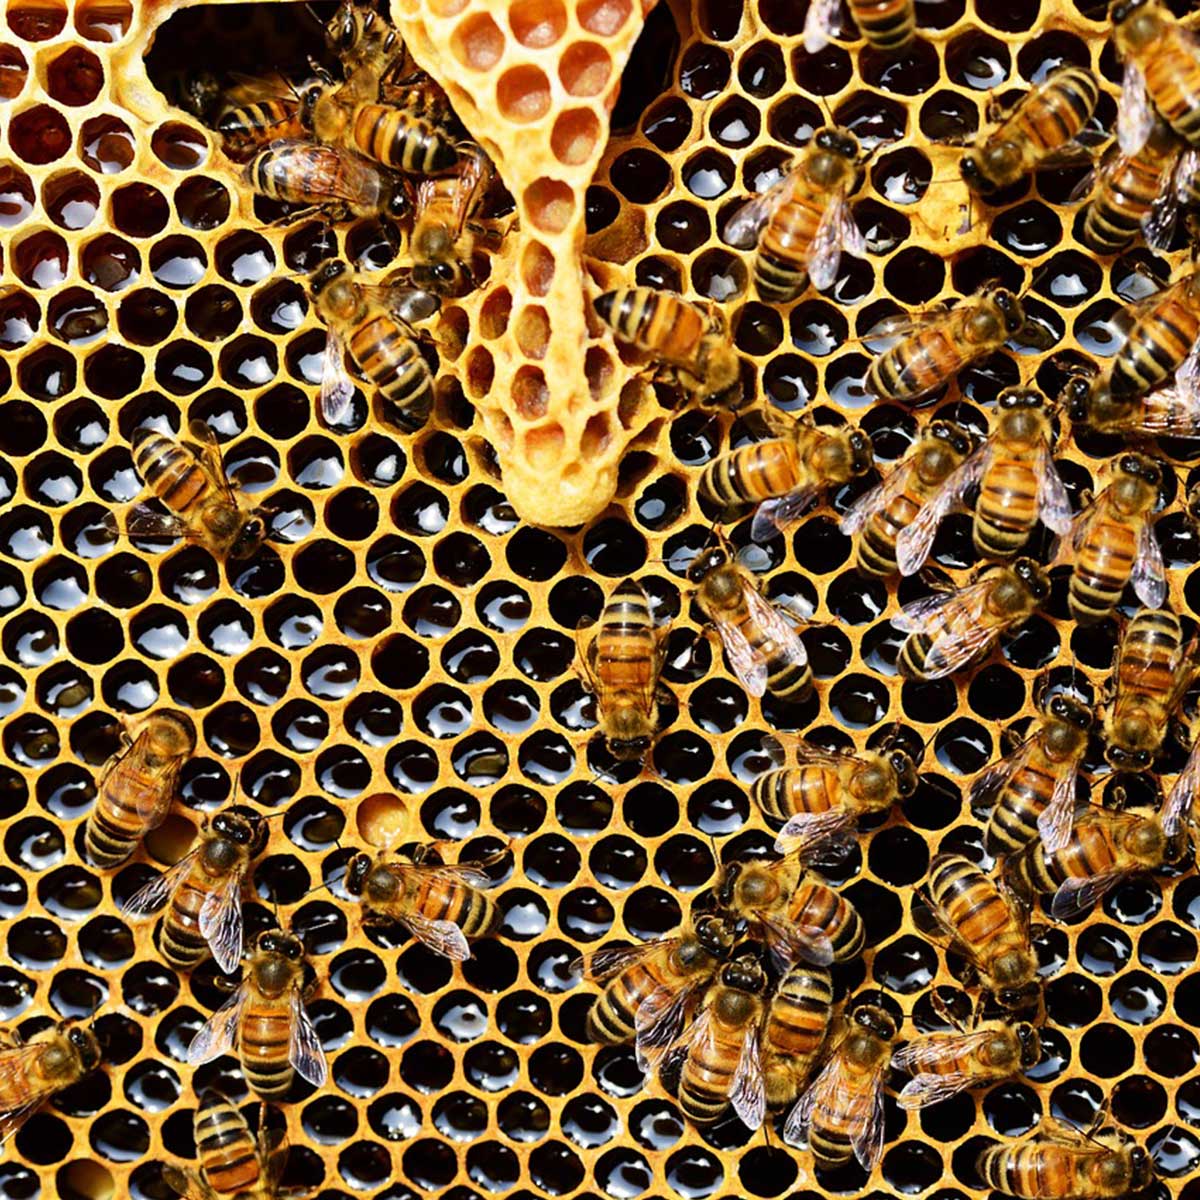 Meliponicultura, una práctica sustentable al rescate de abejas y bosques